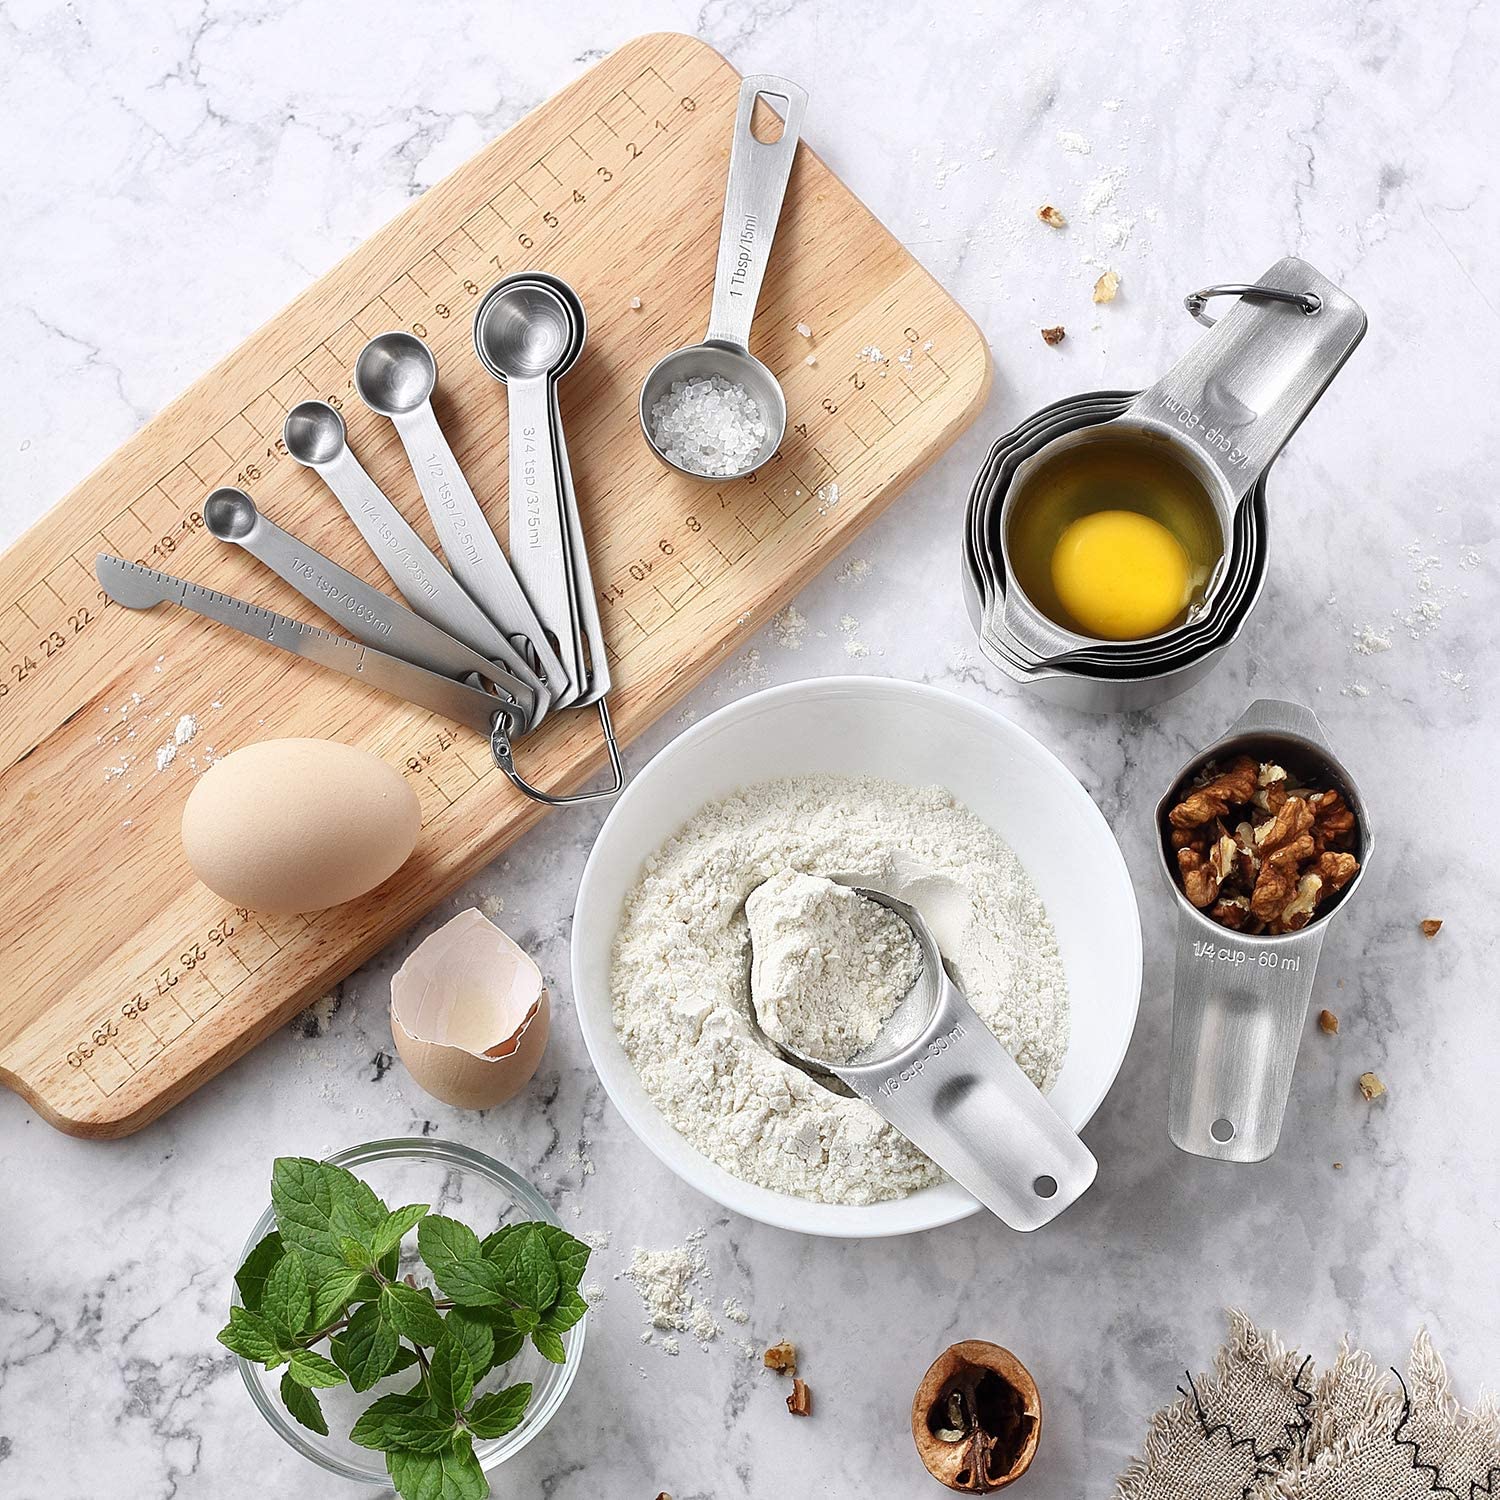 Spring Chef - Vasos medidores de acero inoxidable, herramientas de cocina  con marcas fáciles de leer para medir ingredientes secos o líquidos, juego